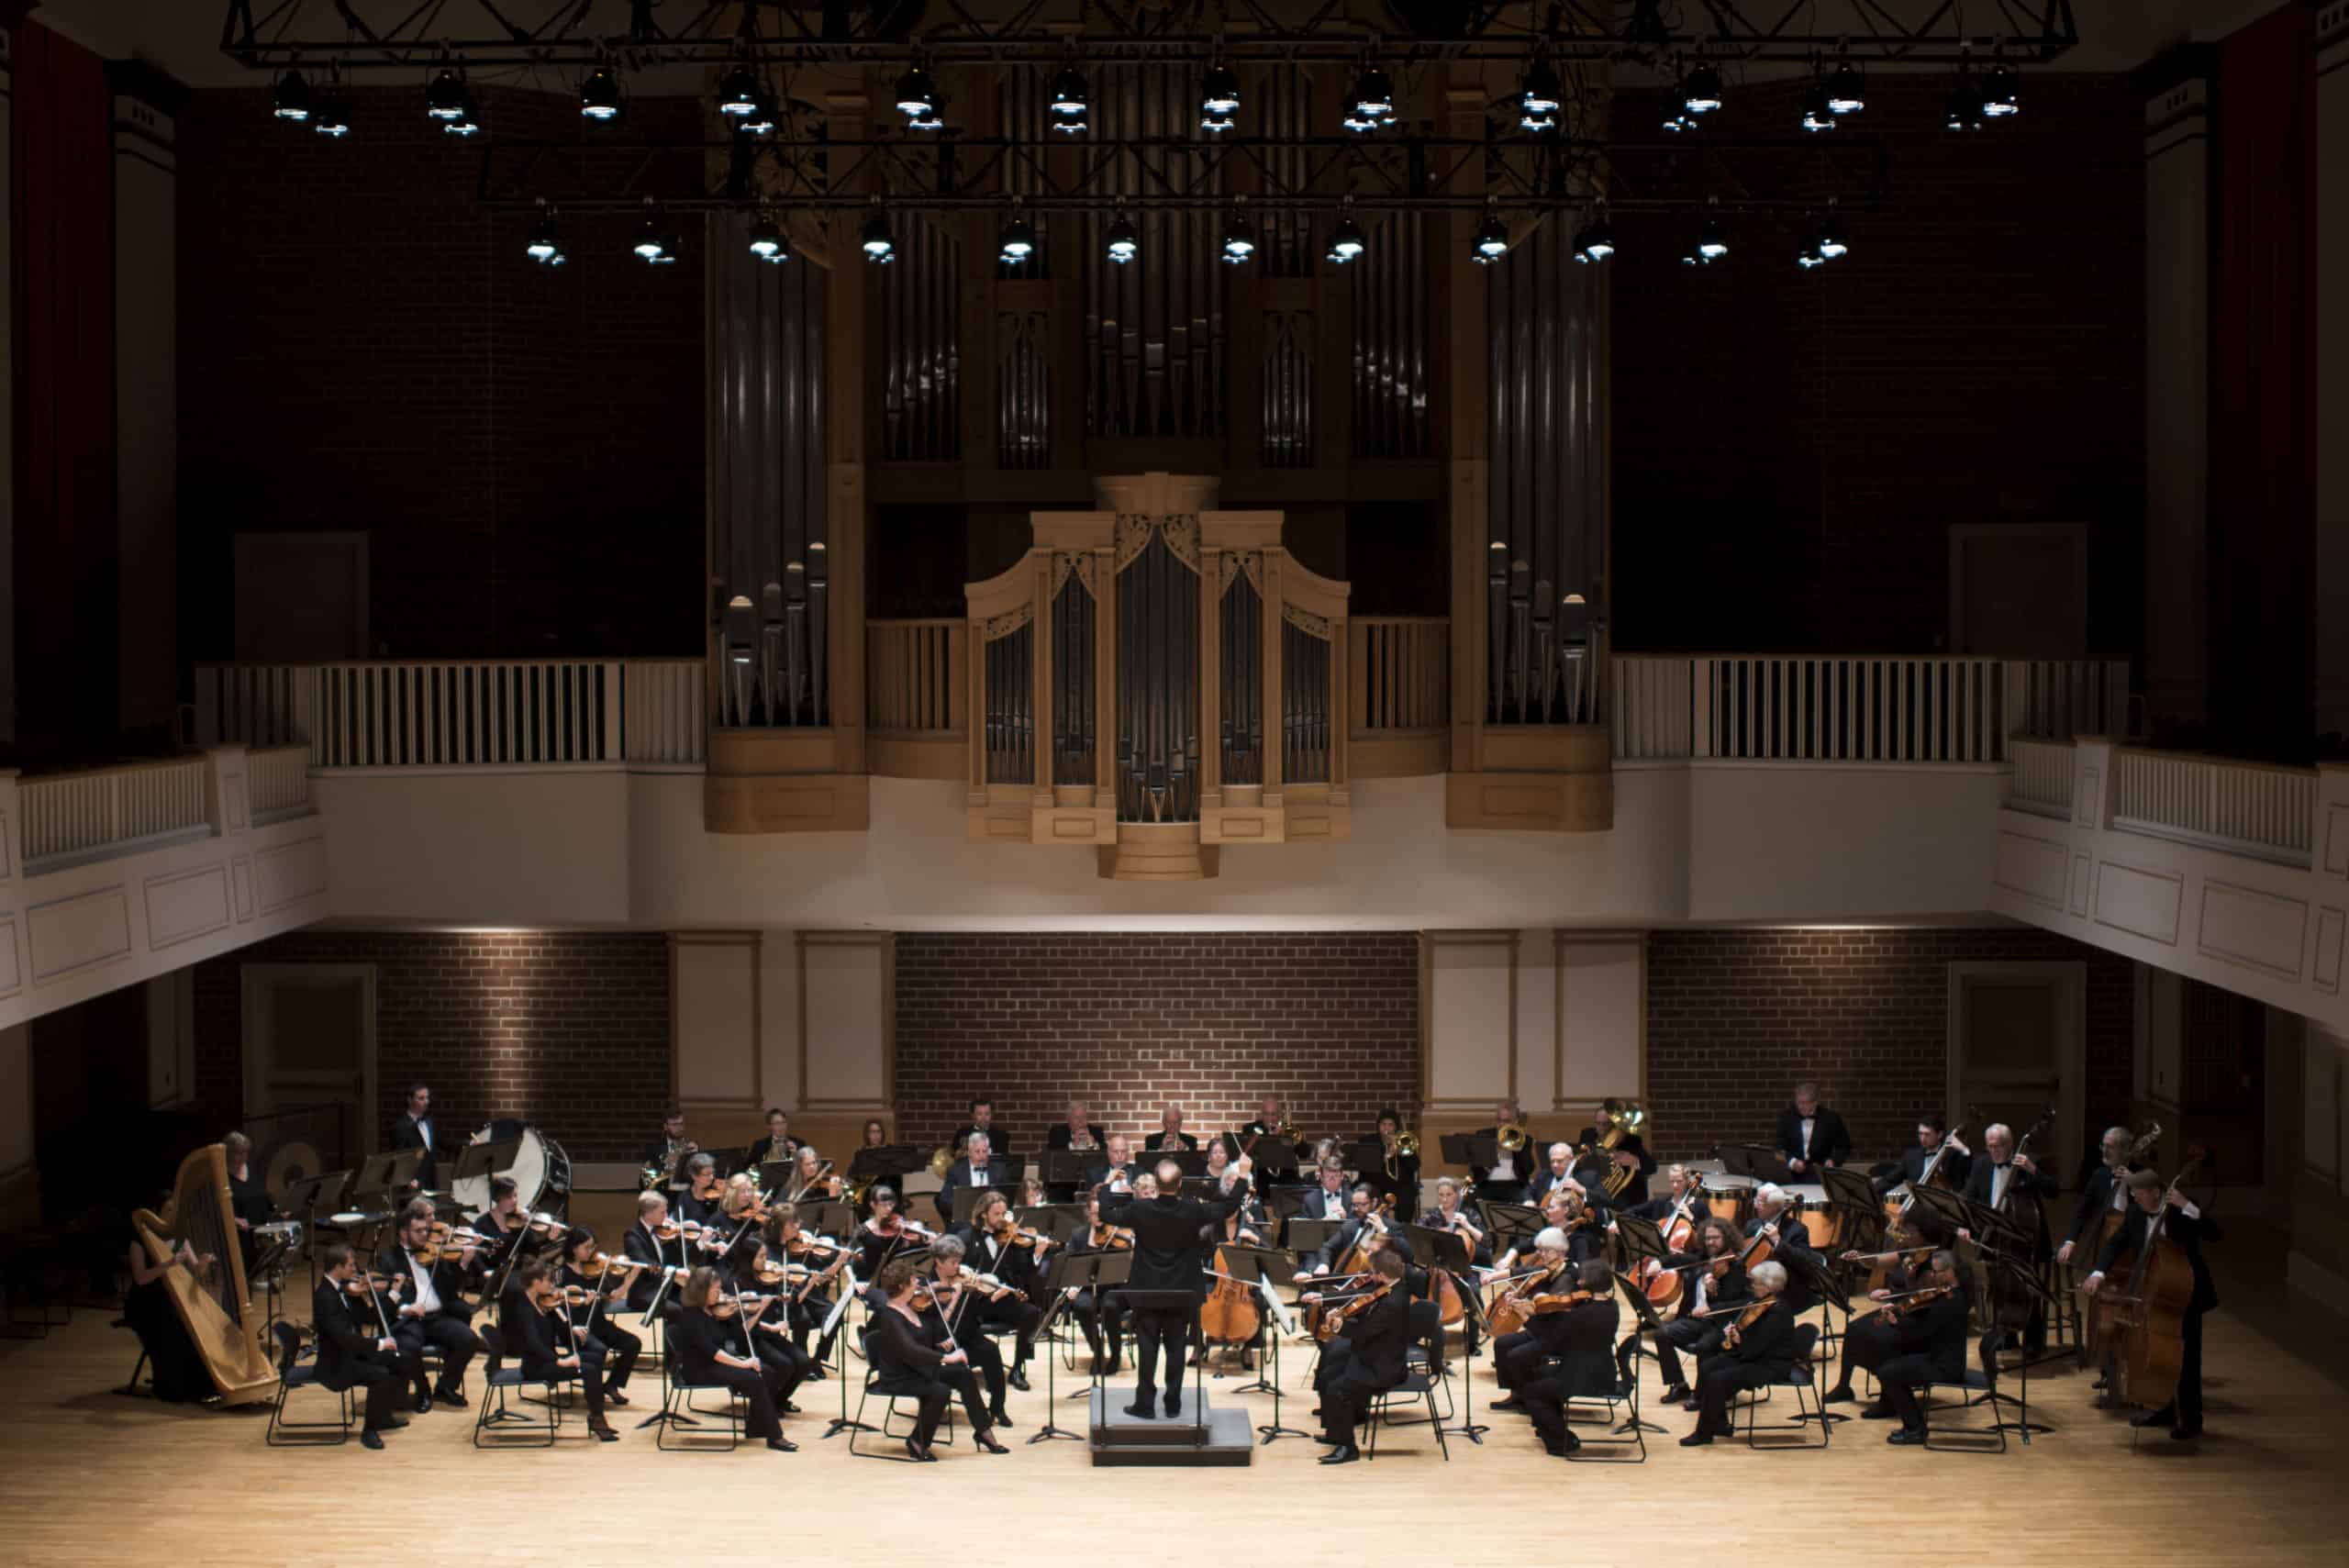 Photo of Brevard Philharmonic in the Porter Center, Kaelee Denise Photography